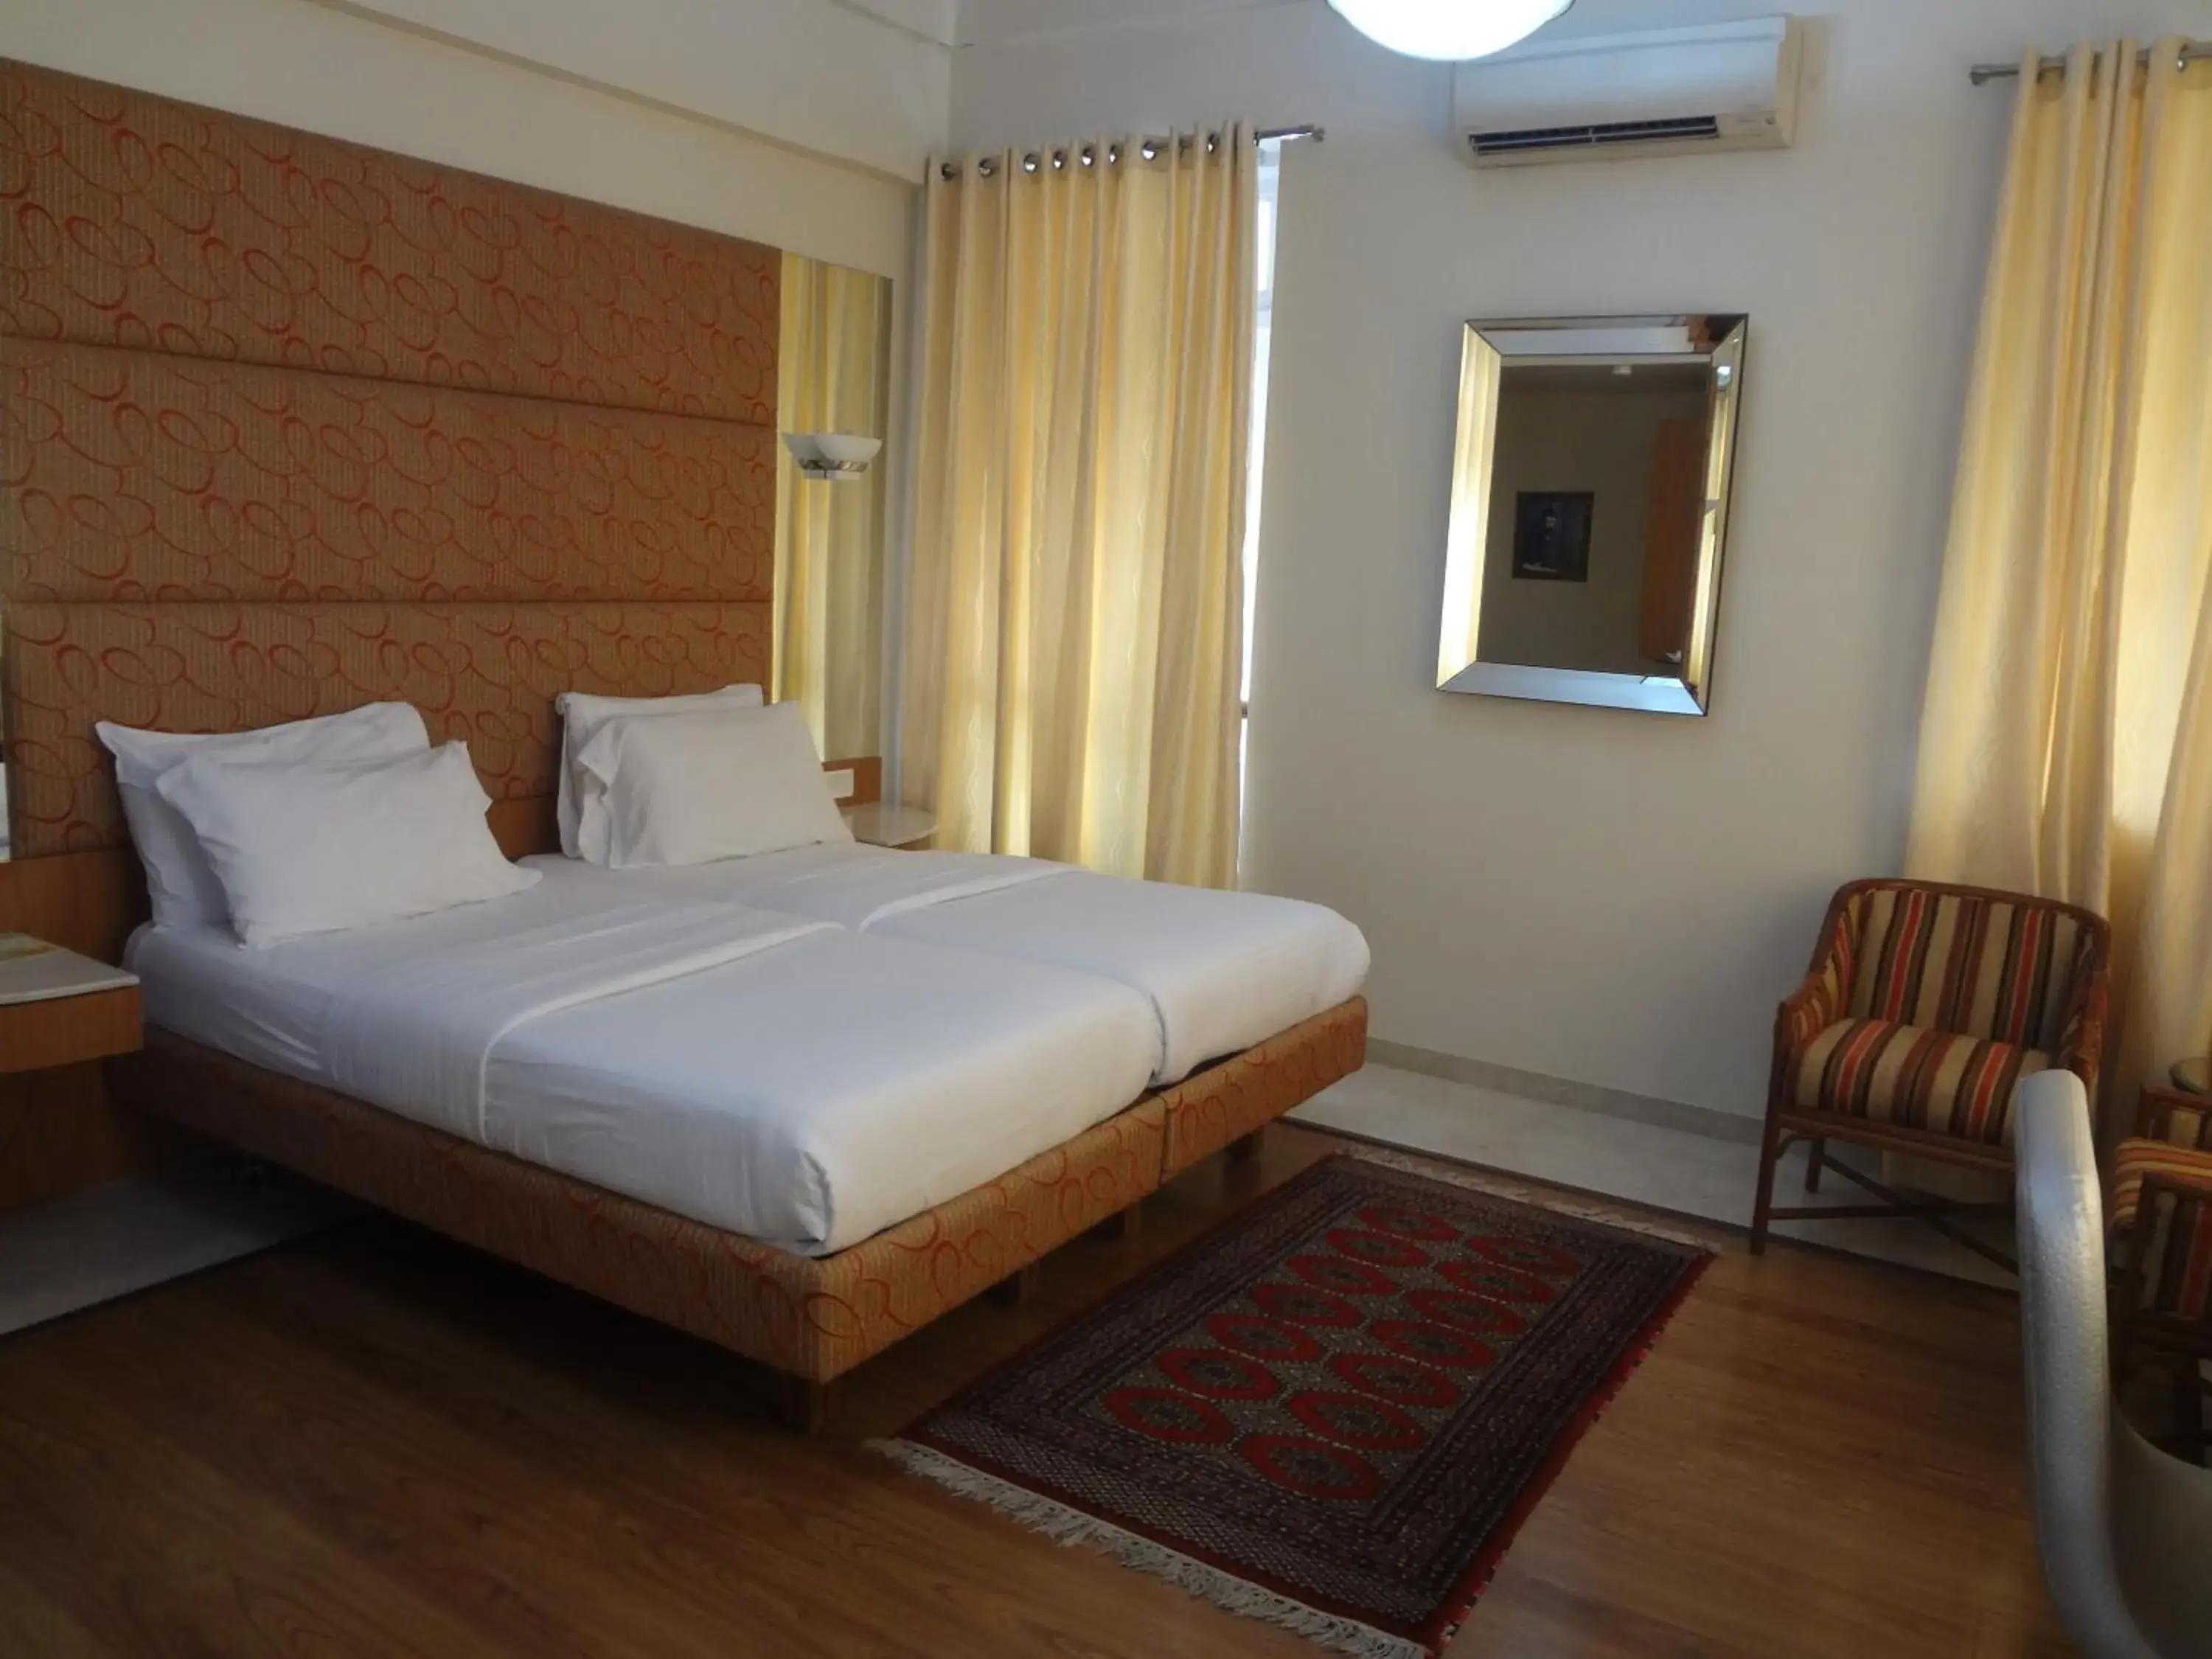 Bedroom, Room Photo in Astoria Hotel